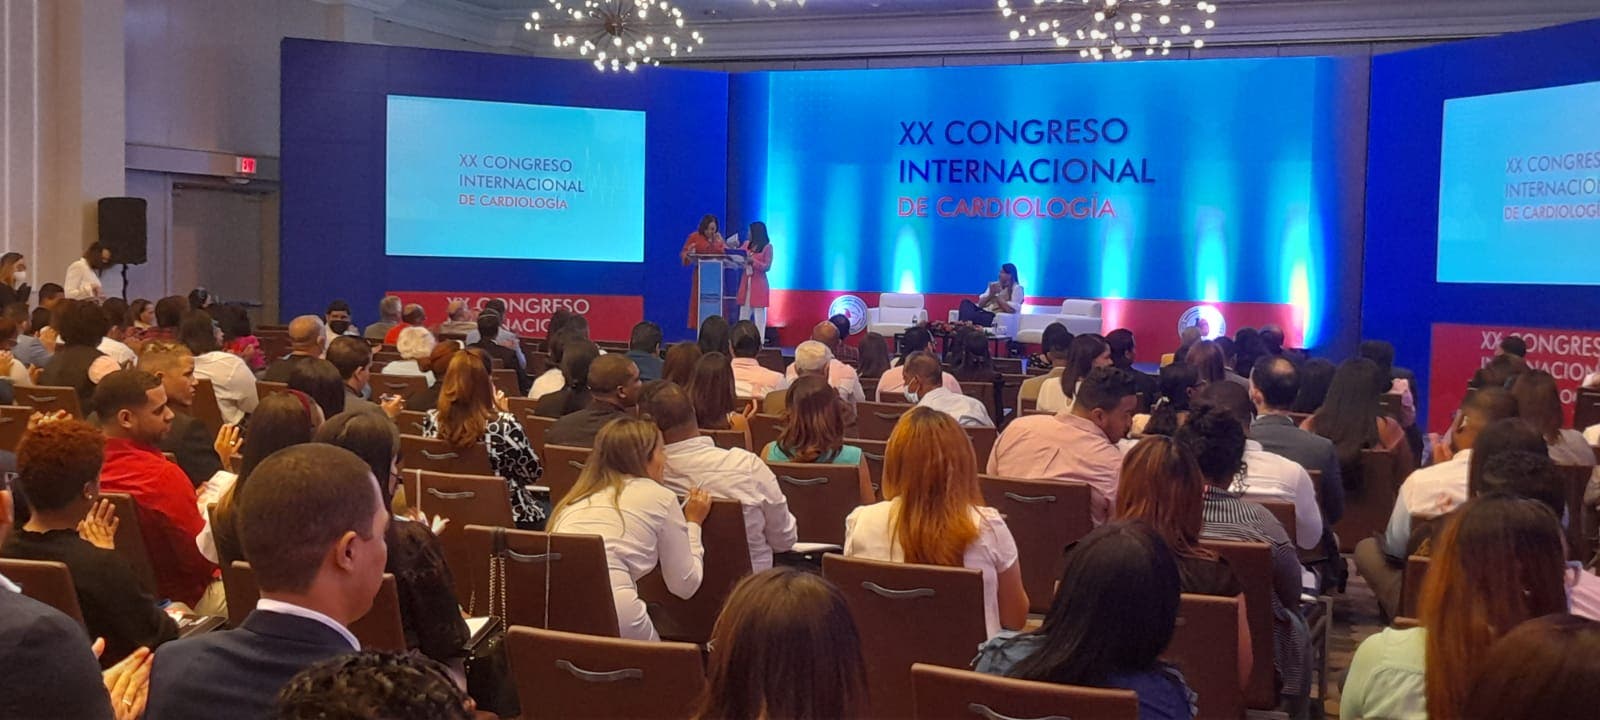 Especialistas debaten novedades en el XX Congreso Internacional de Cardiología